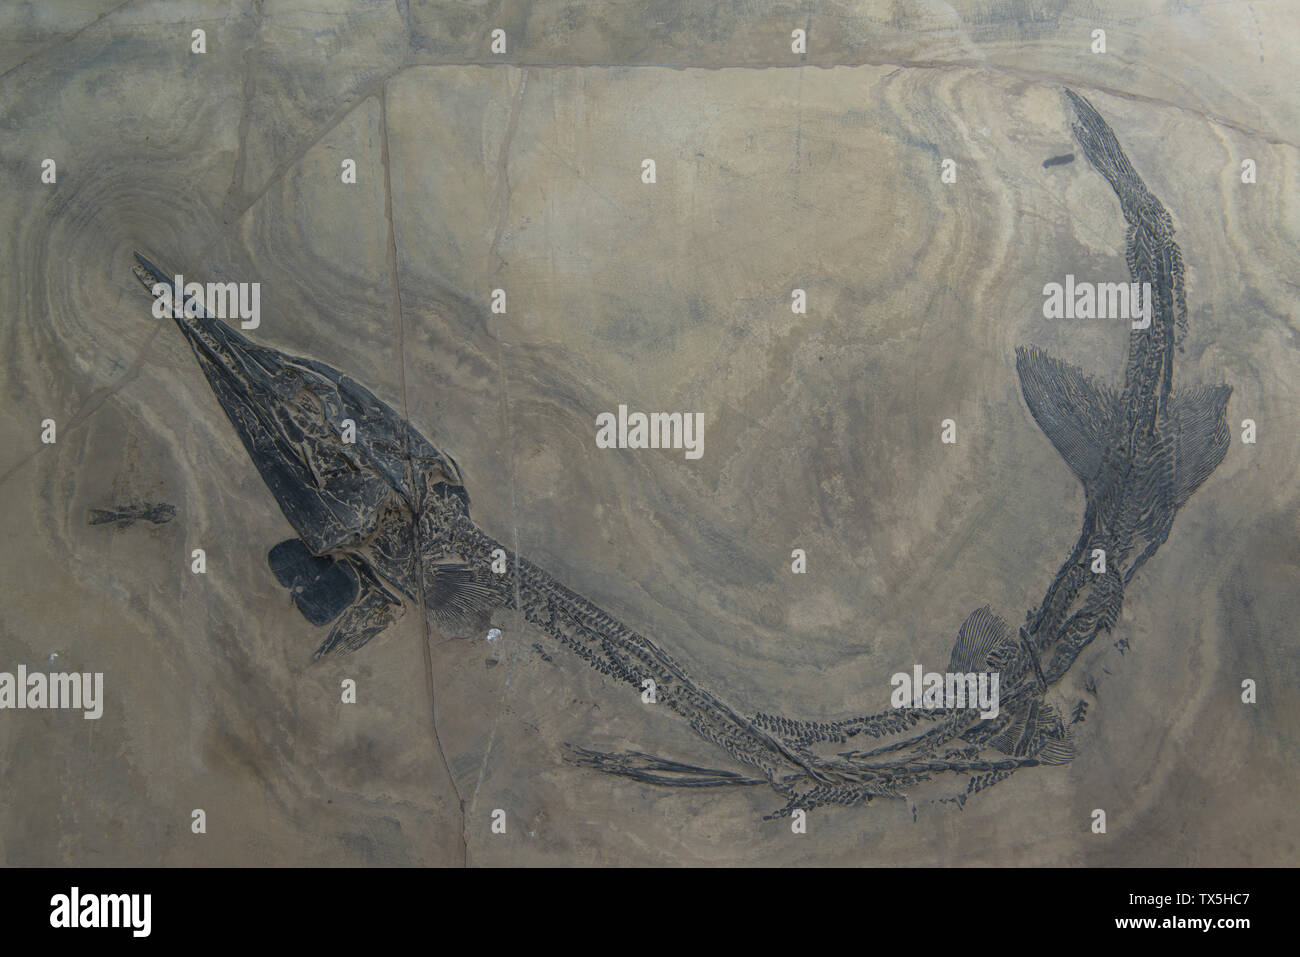 Fossile von Eosaurichthys sp. Mittleren Trias. Guiyang, Provinz Yunnan, China. Geologisches Museum von China. Stockfoto